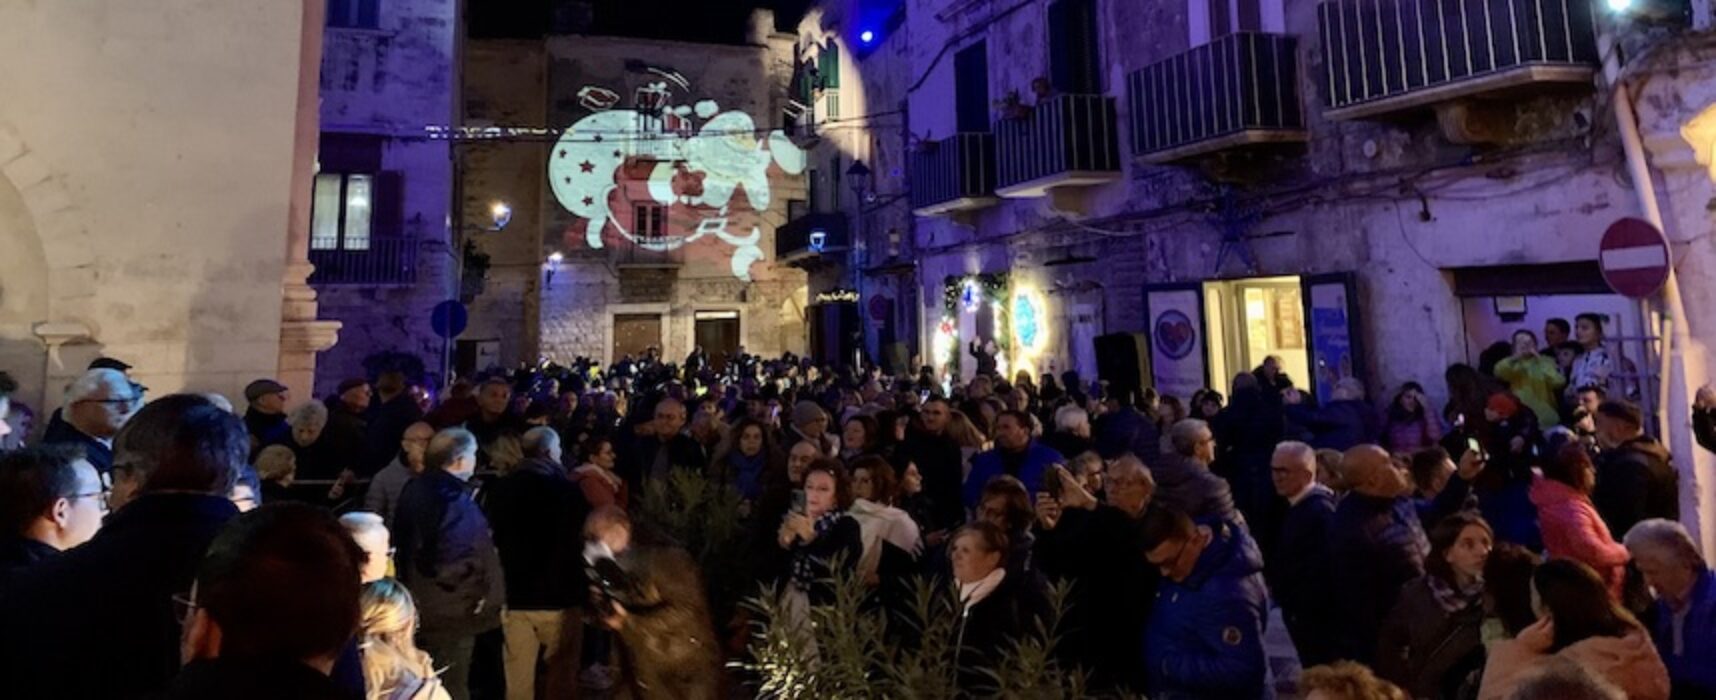 Successo per la prima serata di Calici nel Borgo Antico 2022 nel centro storico illuminato a festa